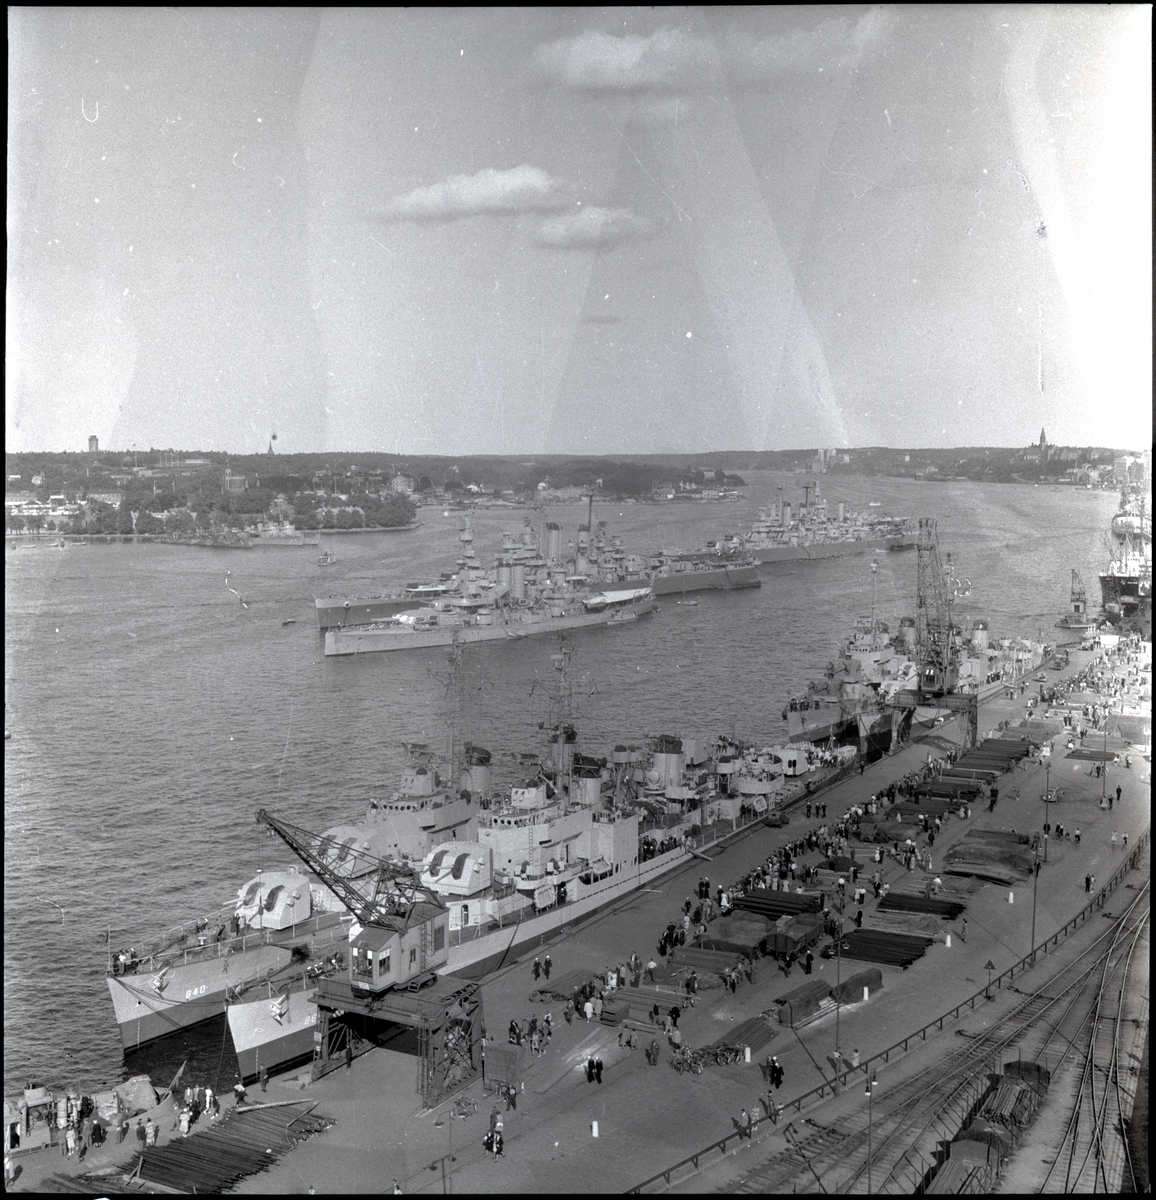 [från fotobeskrivningen:] [---] "Amerikansk eskader på besök i Stockholm omkr. den 13 okt. 1945. Bland de fartyg vilka äro förtöjda mellan bojar märken pansarskeppet SVERIGE - kustflottans flaggskepp." [sic]
[---]